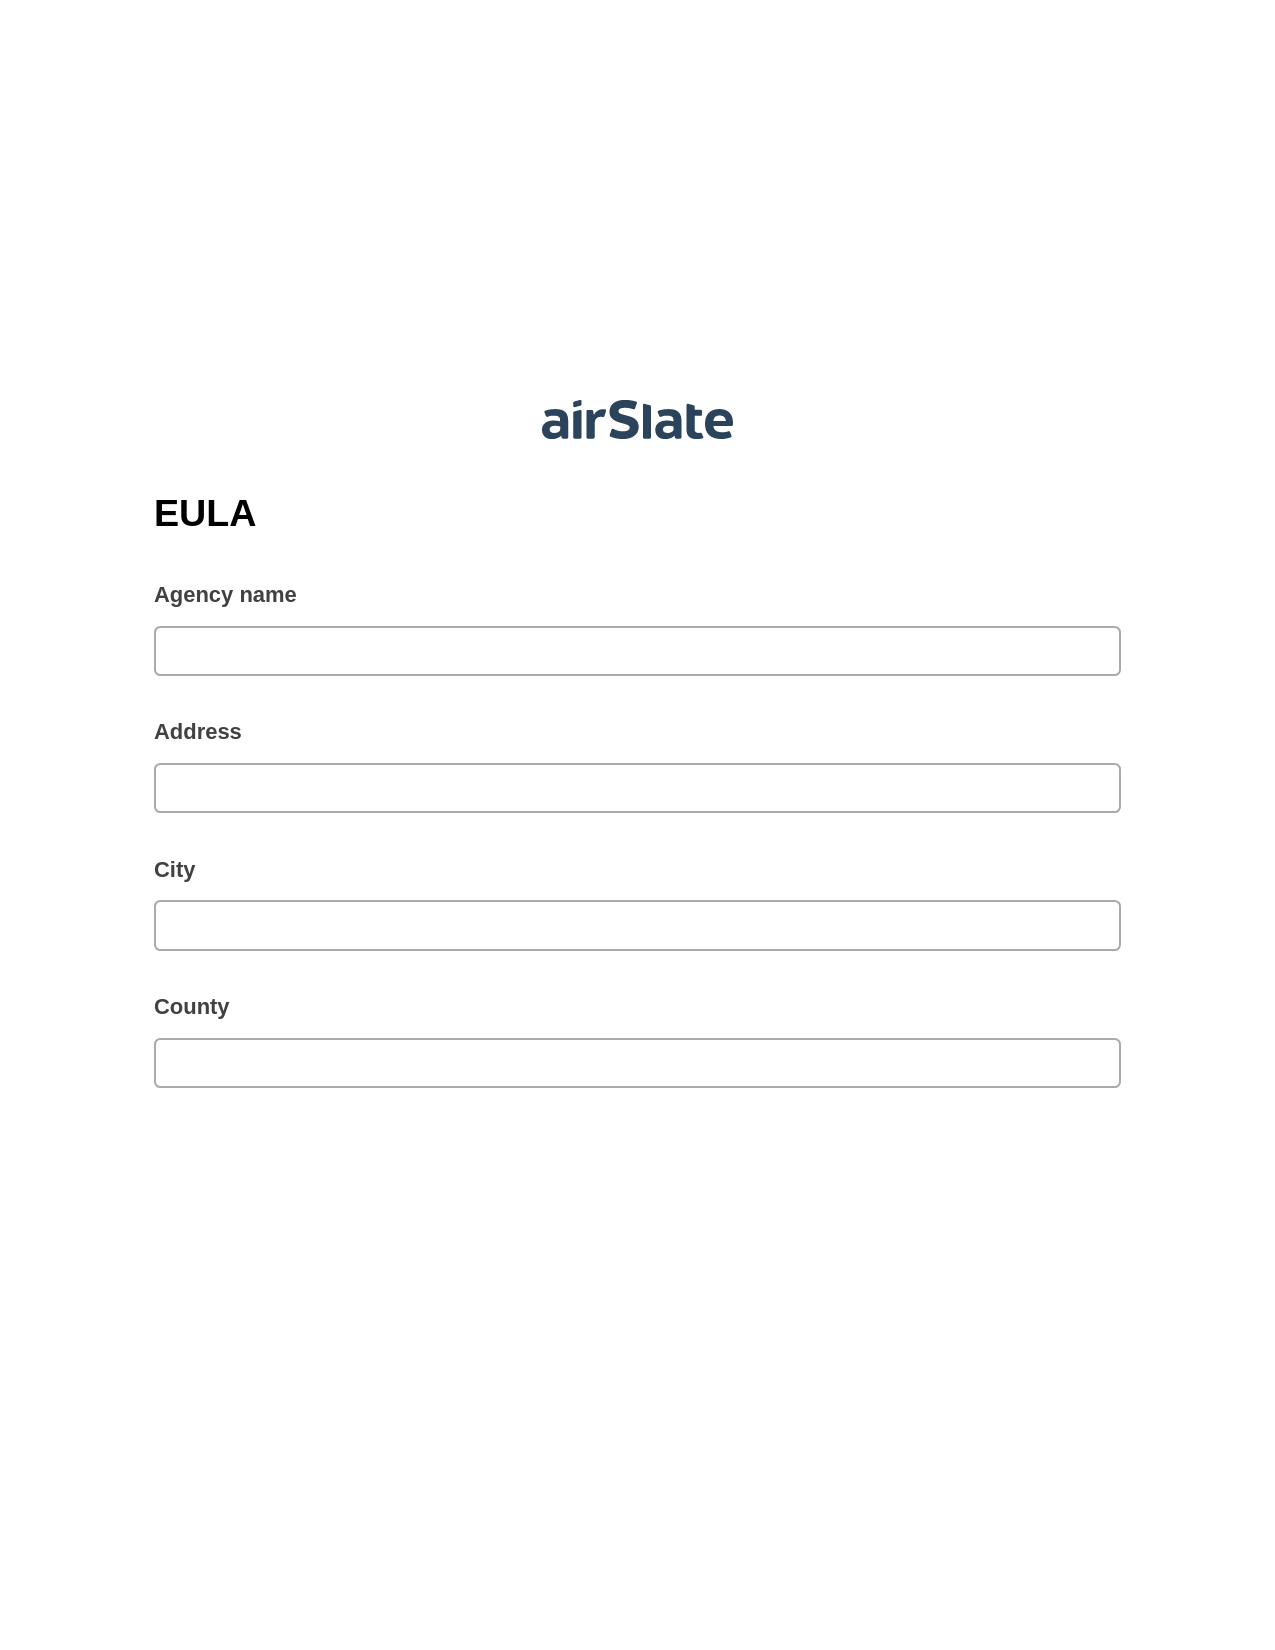 EULA Pre-fill from Google Sheets Bot, Invoke Salesforce Process Bot, Webhook Postfinish Bot